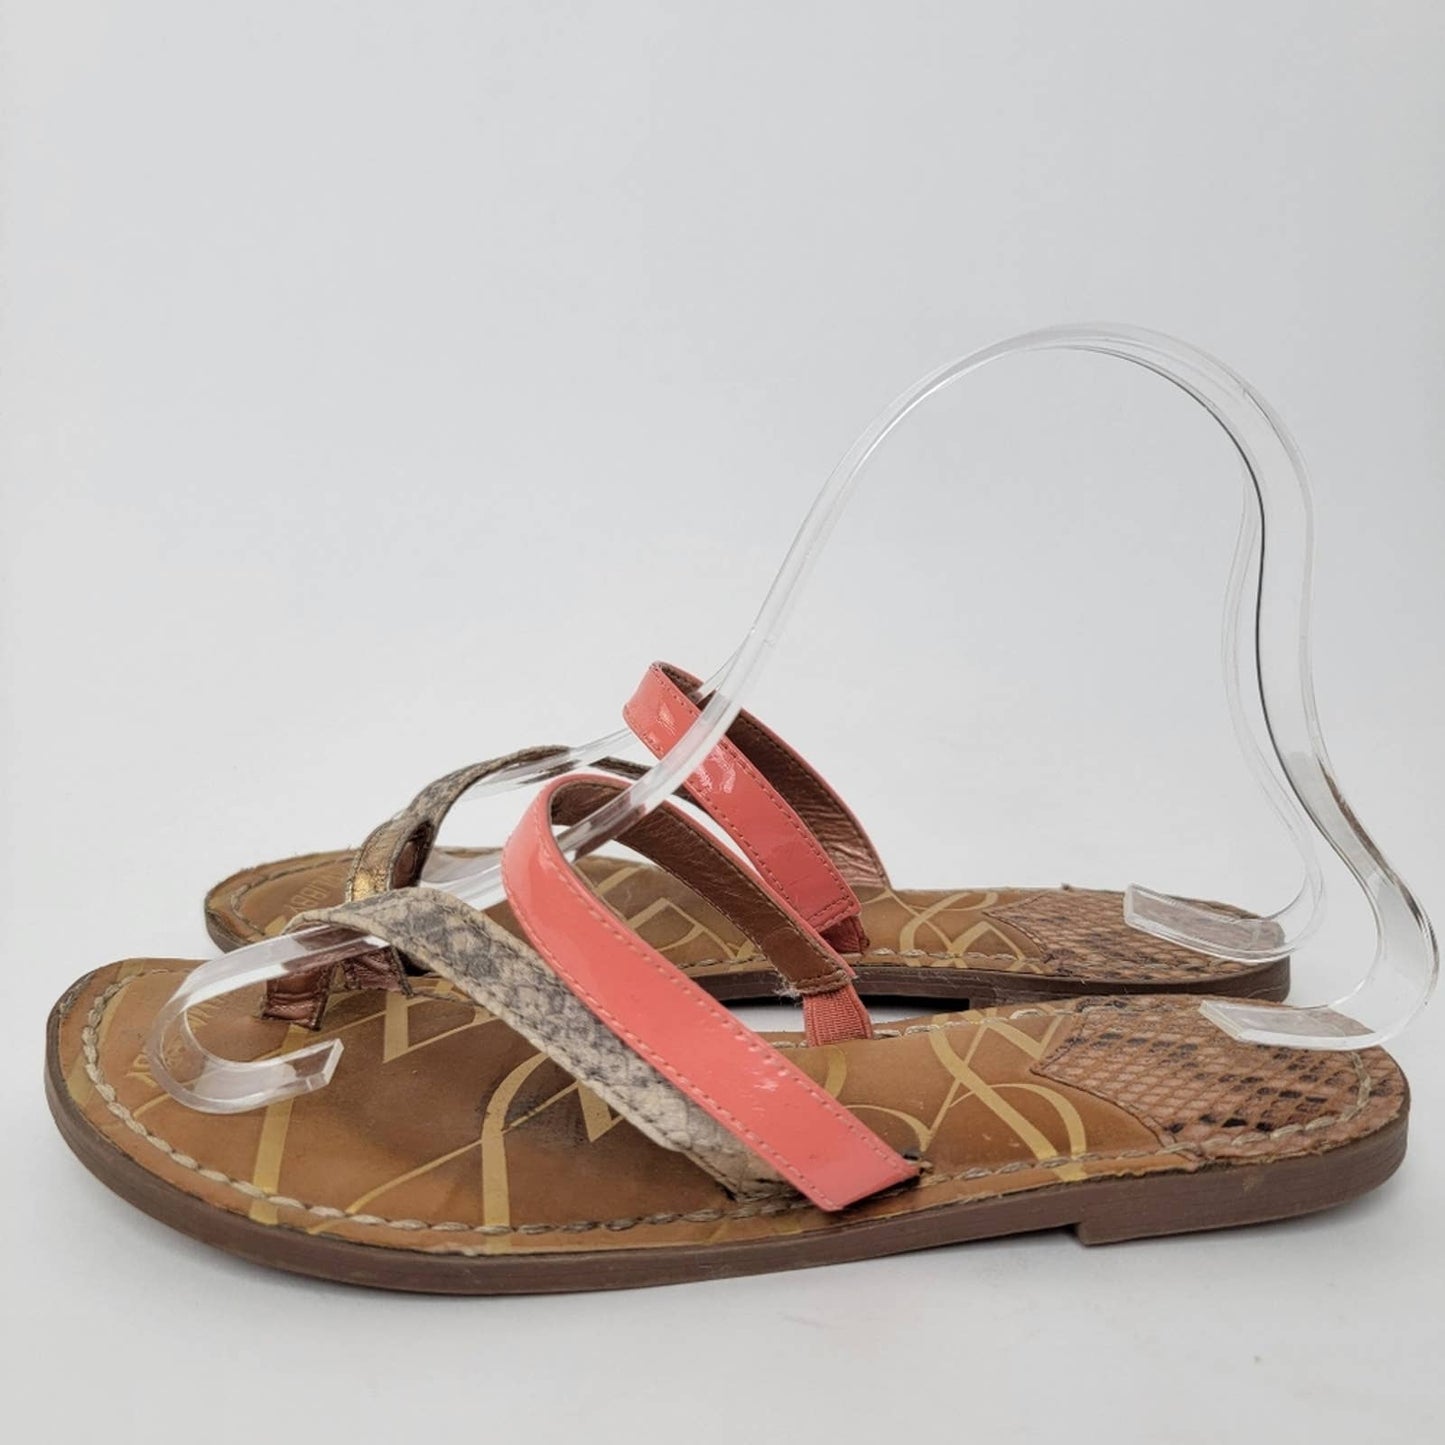 Sam & Libby Strappy Snakeskin Leather Summer Flip Flop Sandals - 6.5